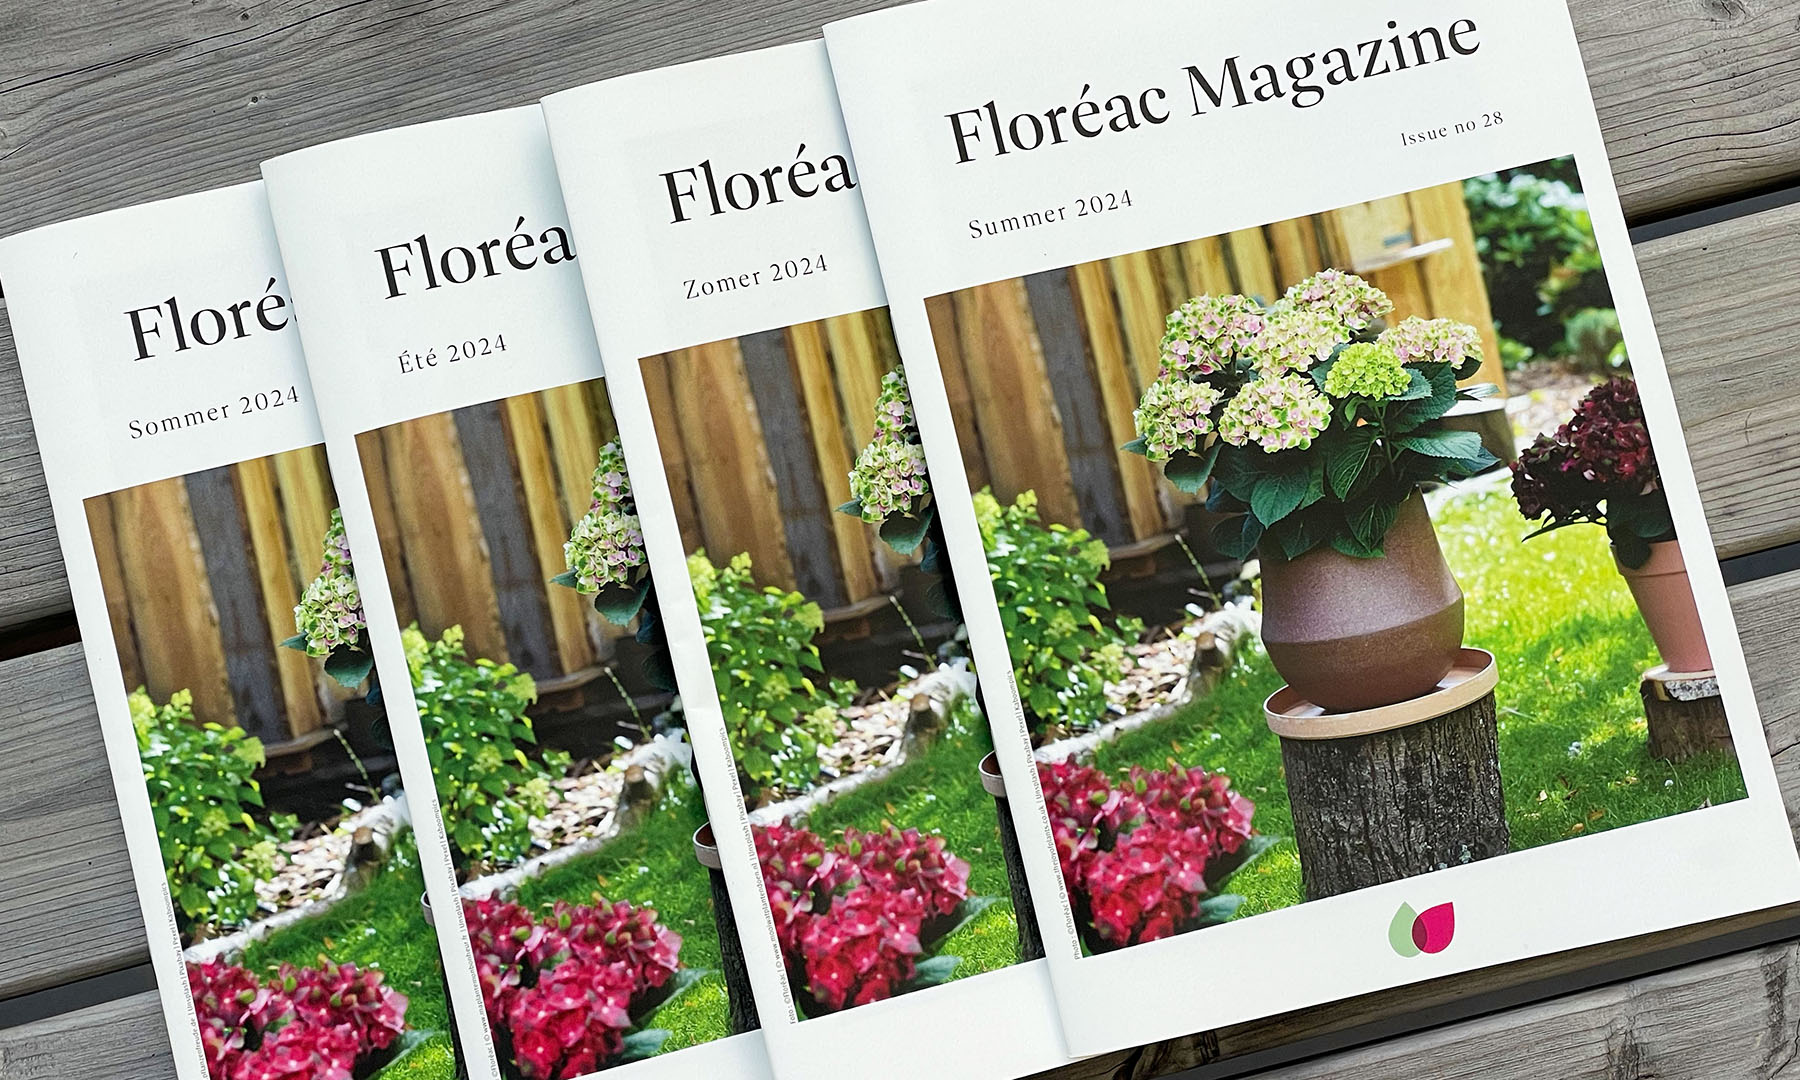 Floréac magazine n°28